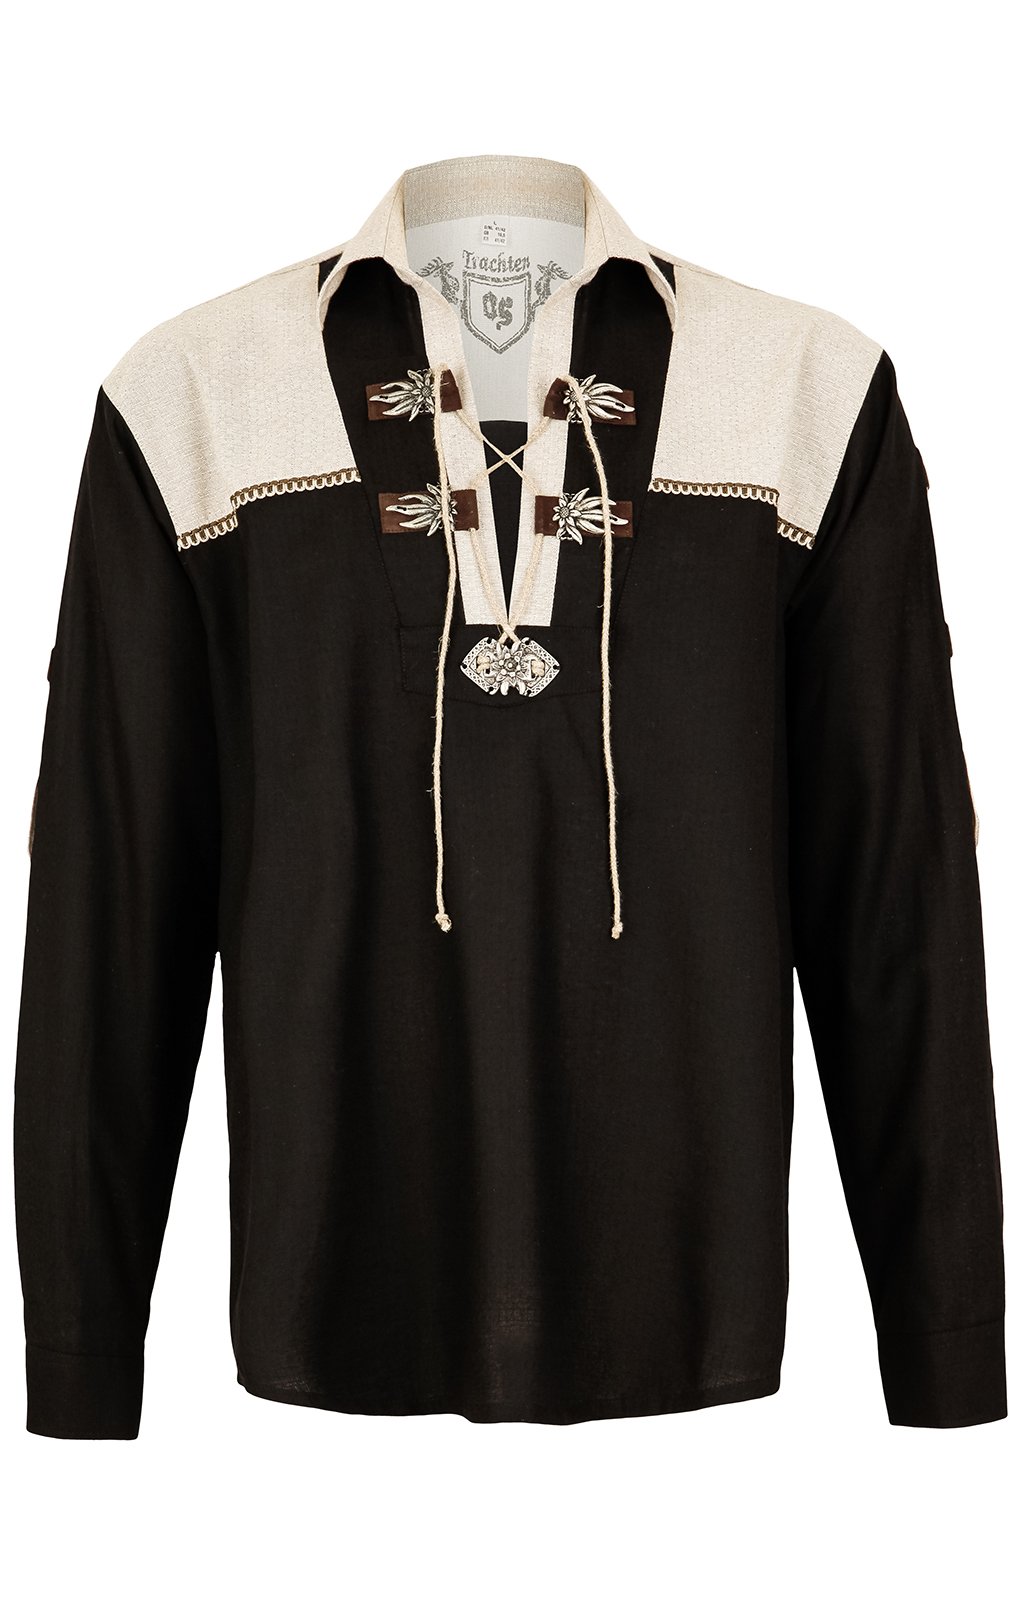 weitere Bilder von German traditional shirt BARANDER black